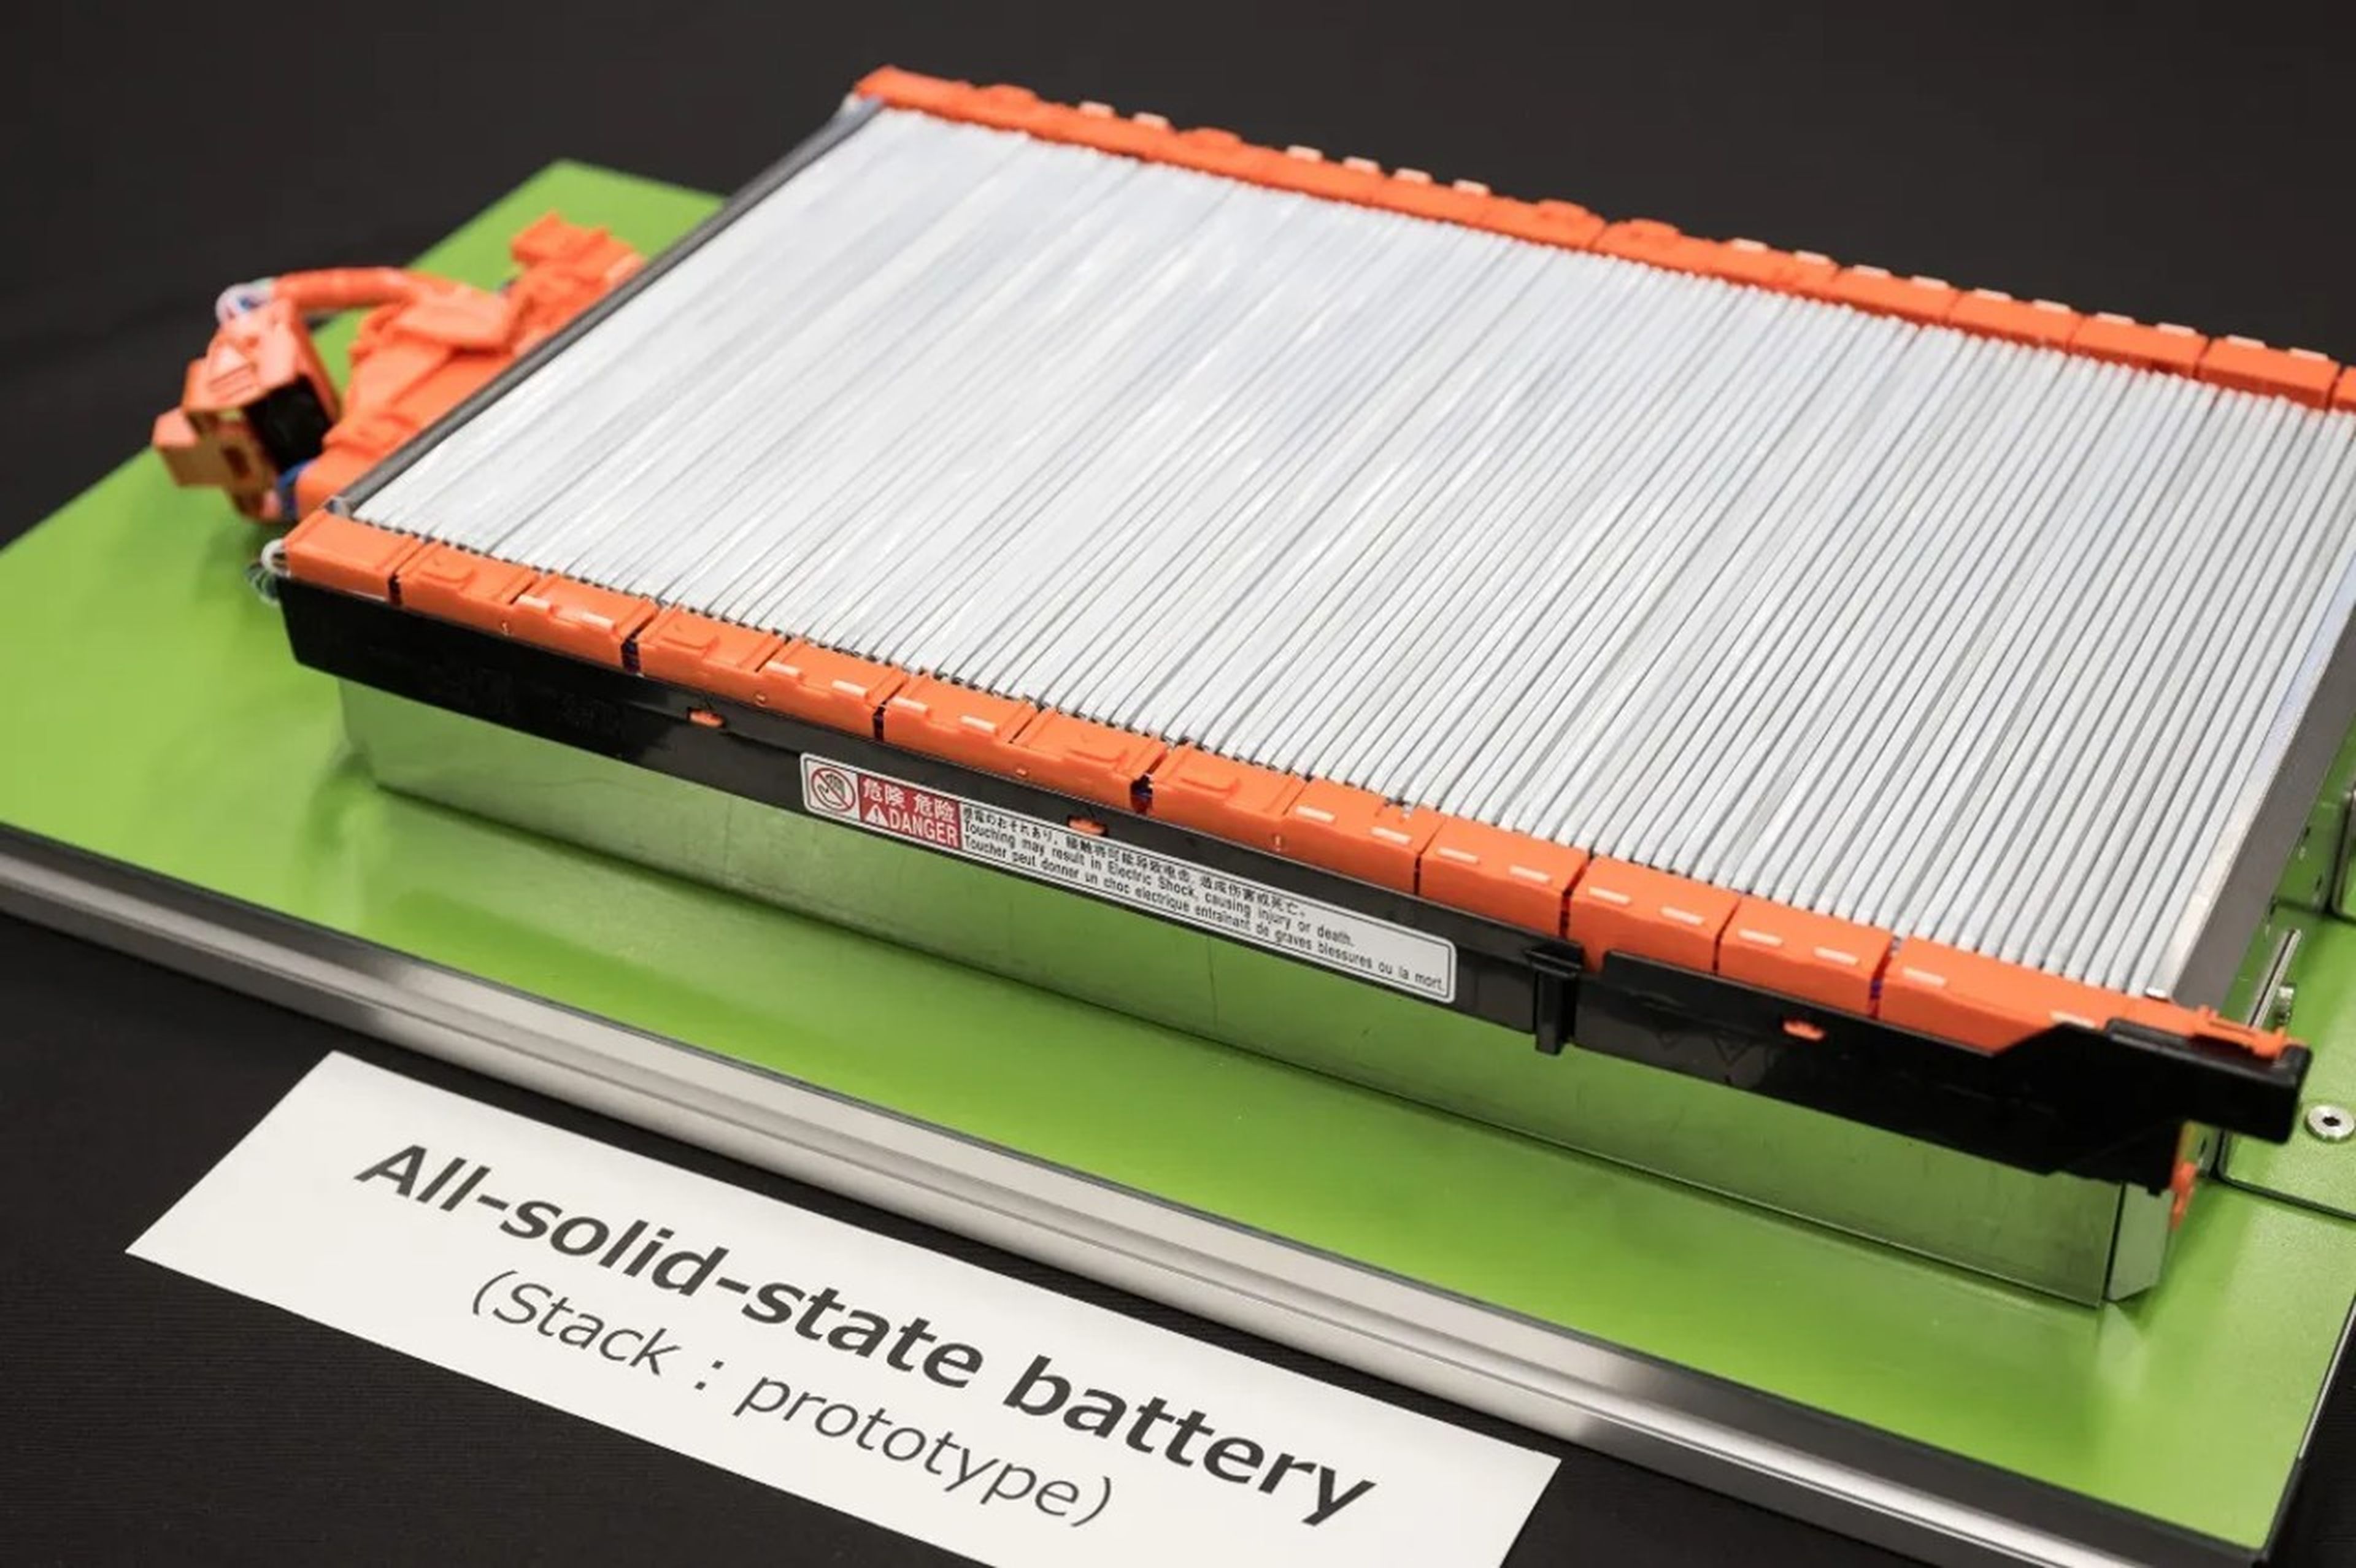 Nuevo material promete revolucionar baterías de los coches eléctricos